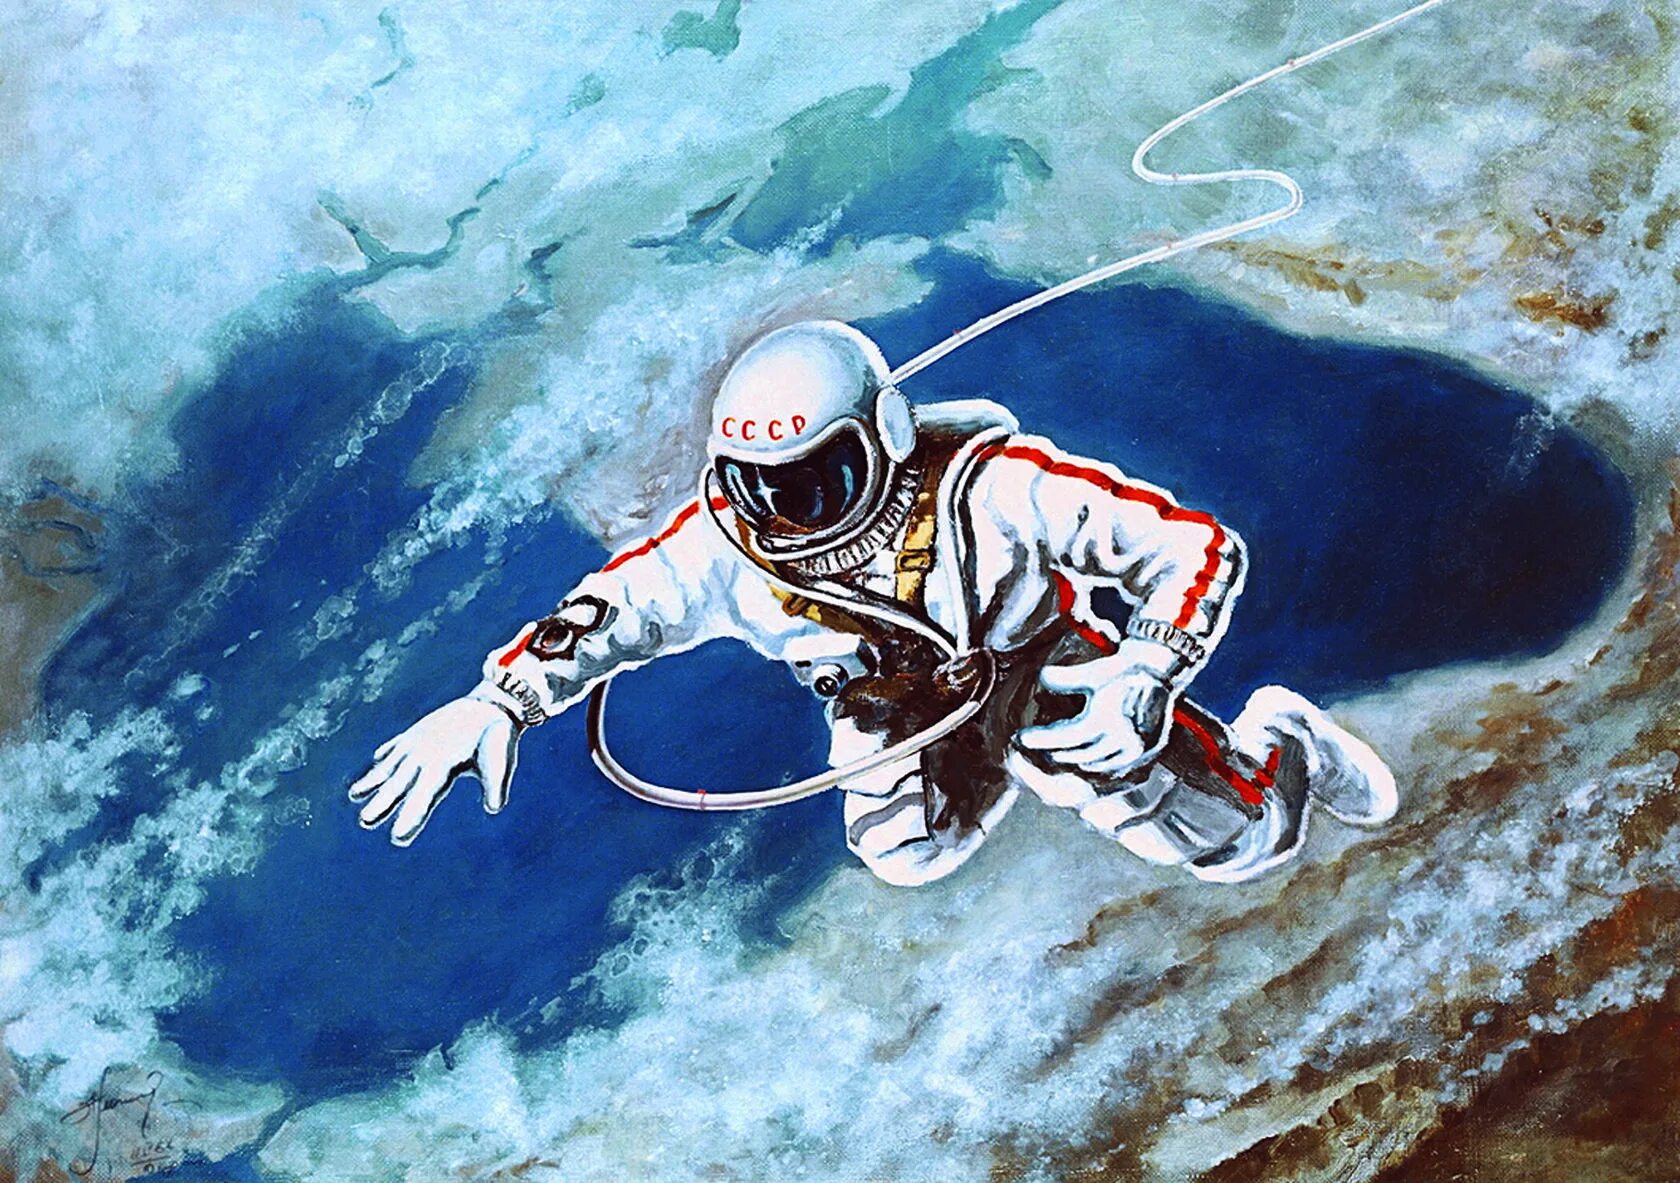 Первый российский космонавт вышедший в открытый космос. Картина Алексея Леонова над черным морем.